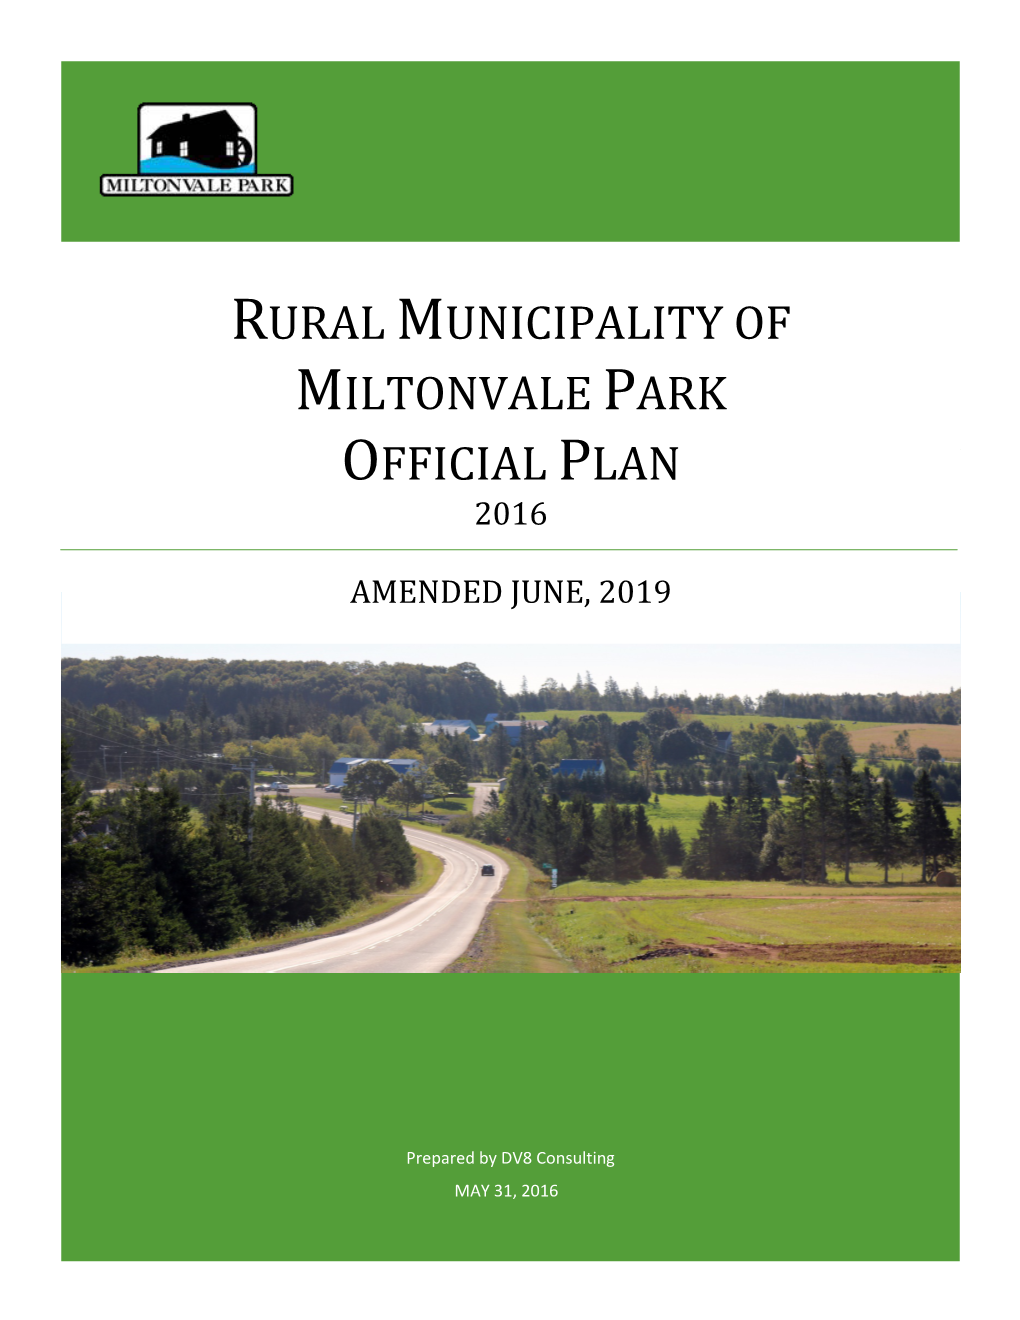 Community of Miltonvale Park Official Plan (2016)